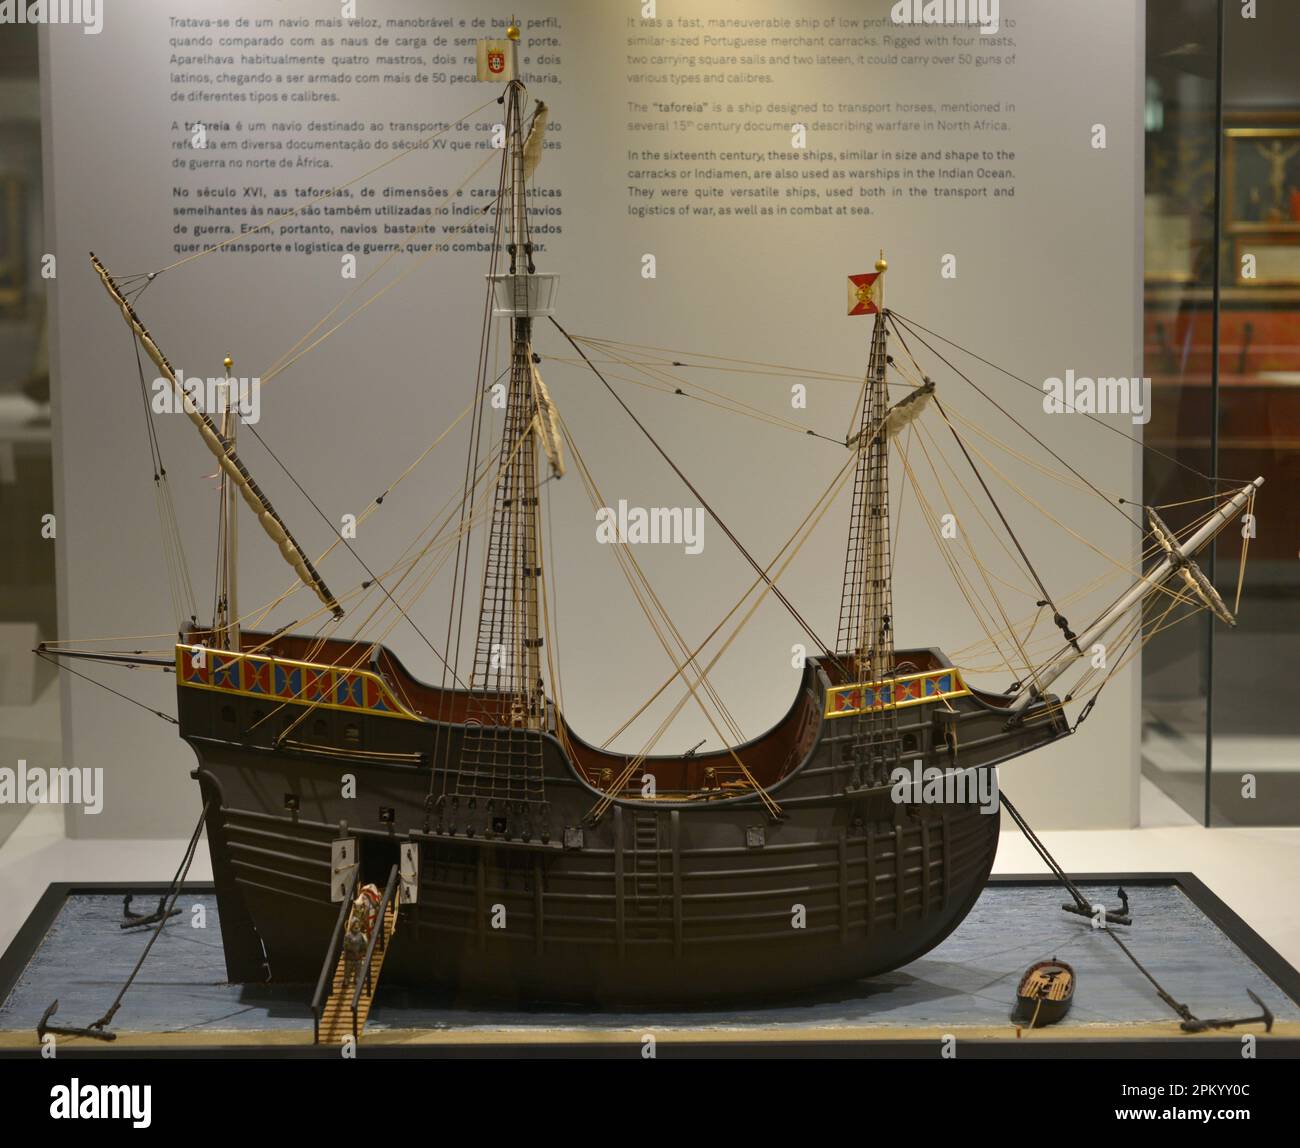 Taforeia-Schiff. Pferdetransportschiff, auch für den Kampf auf See. Modell. Schifffahrtsmuseum. Lissabon, Portugal. Stockfoto